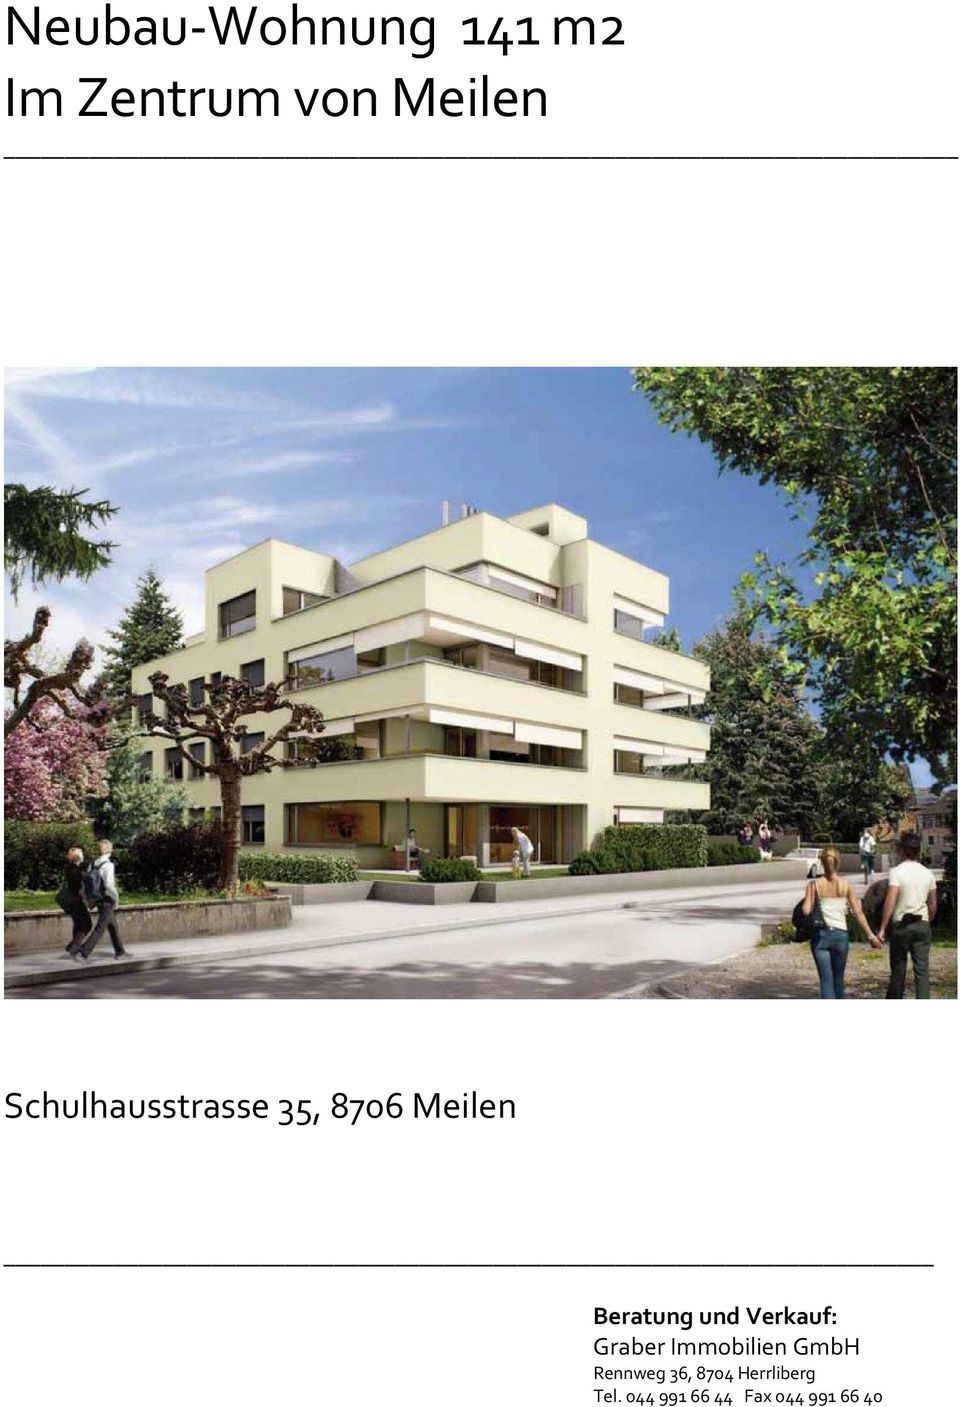 Verkauf: Graber Immobilien GmbH Rennweg 36,